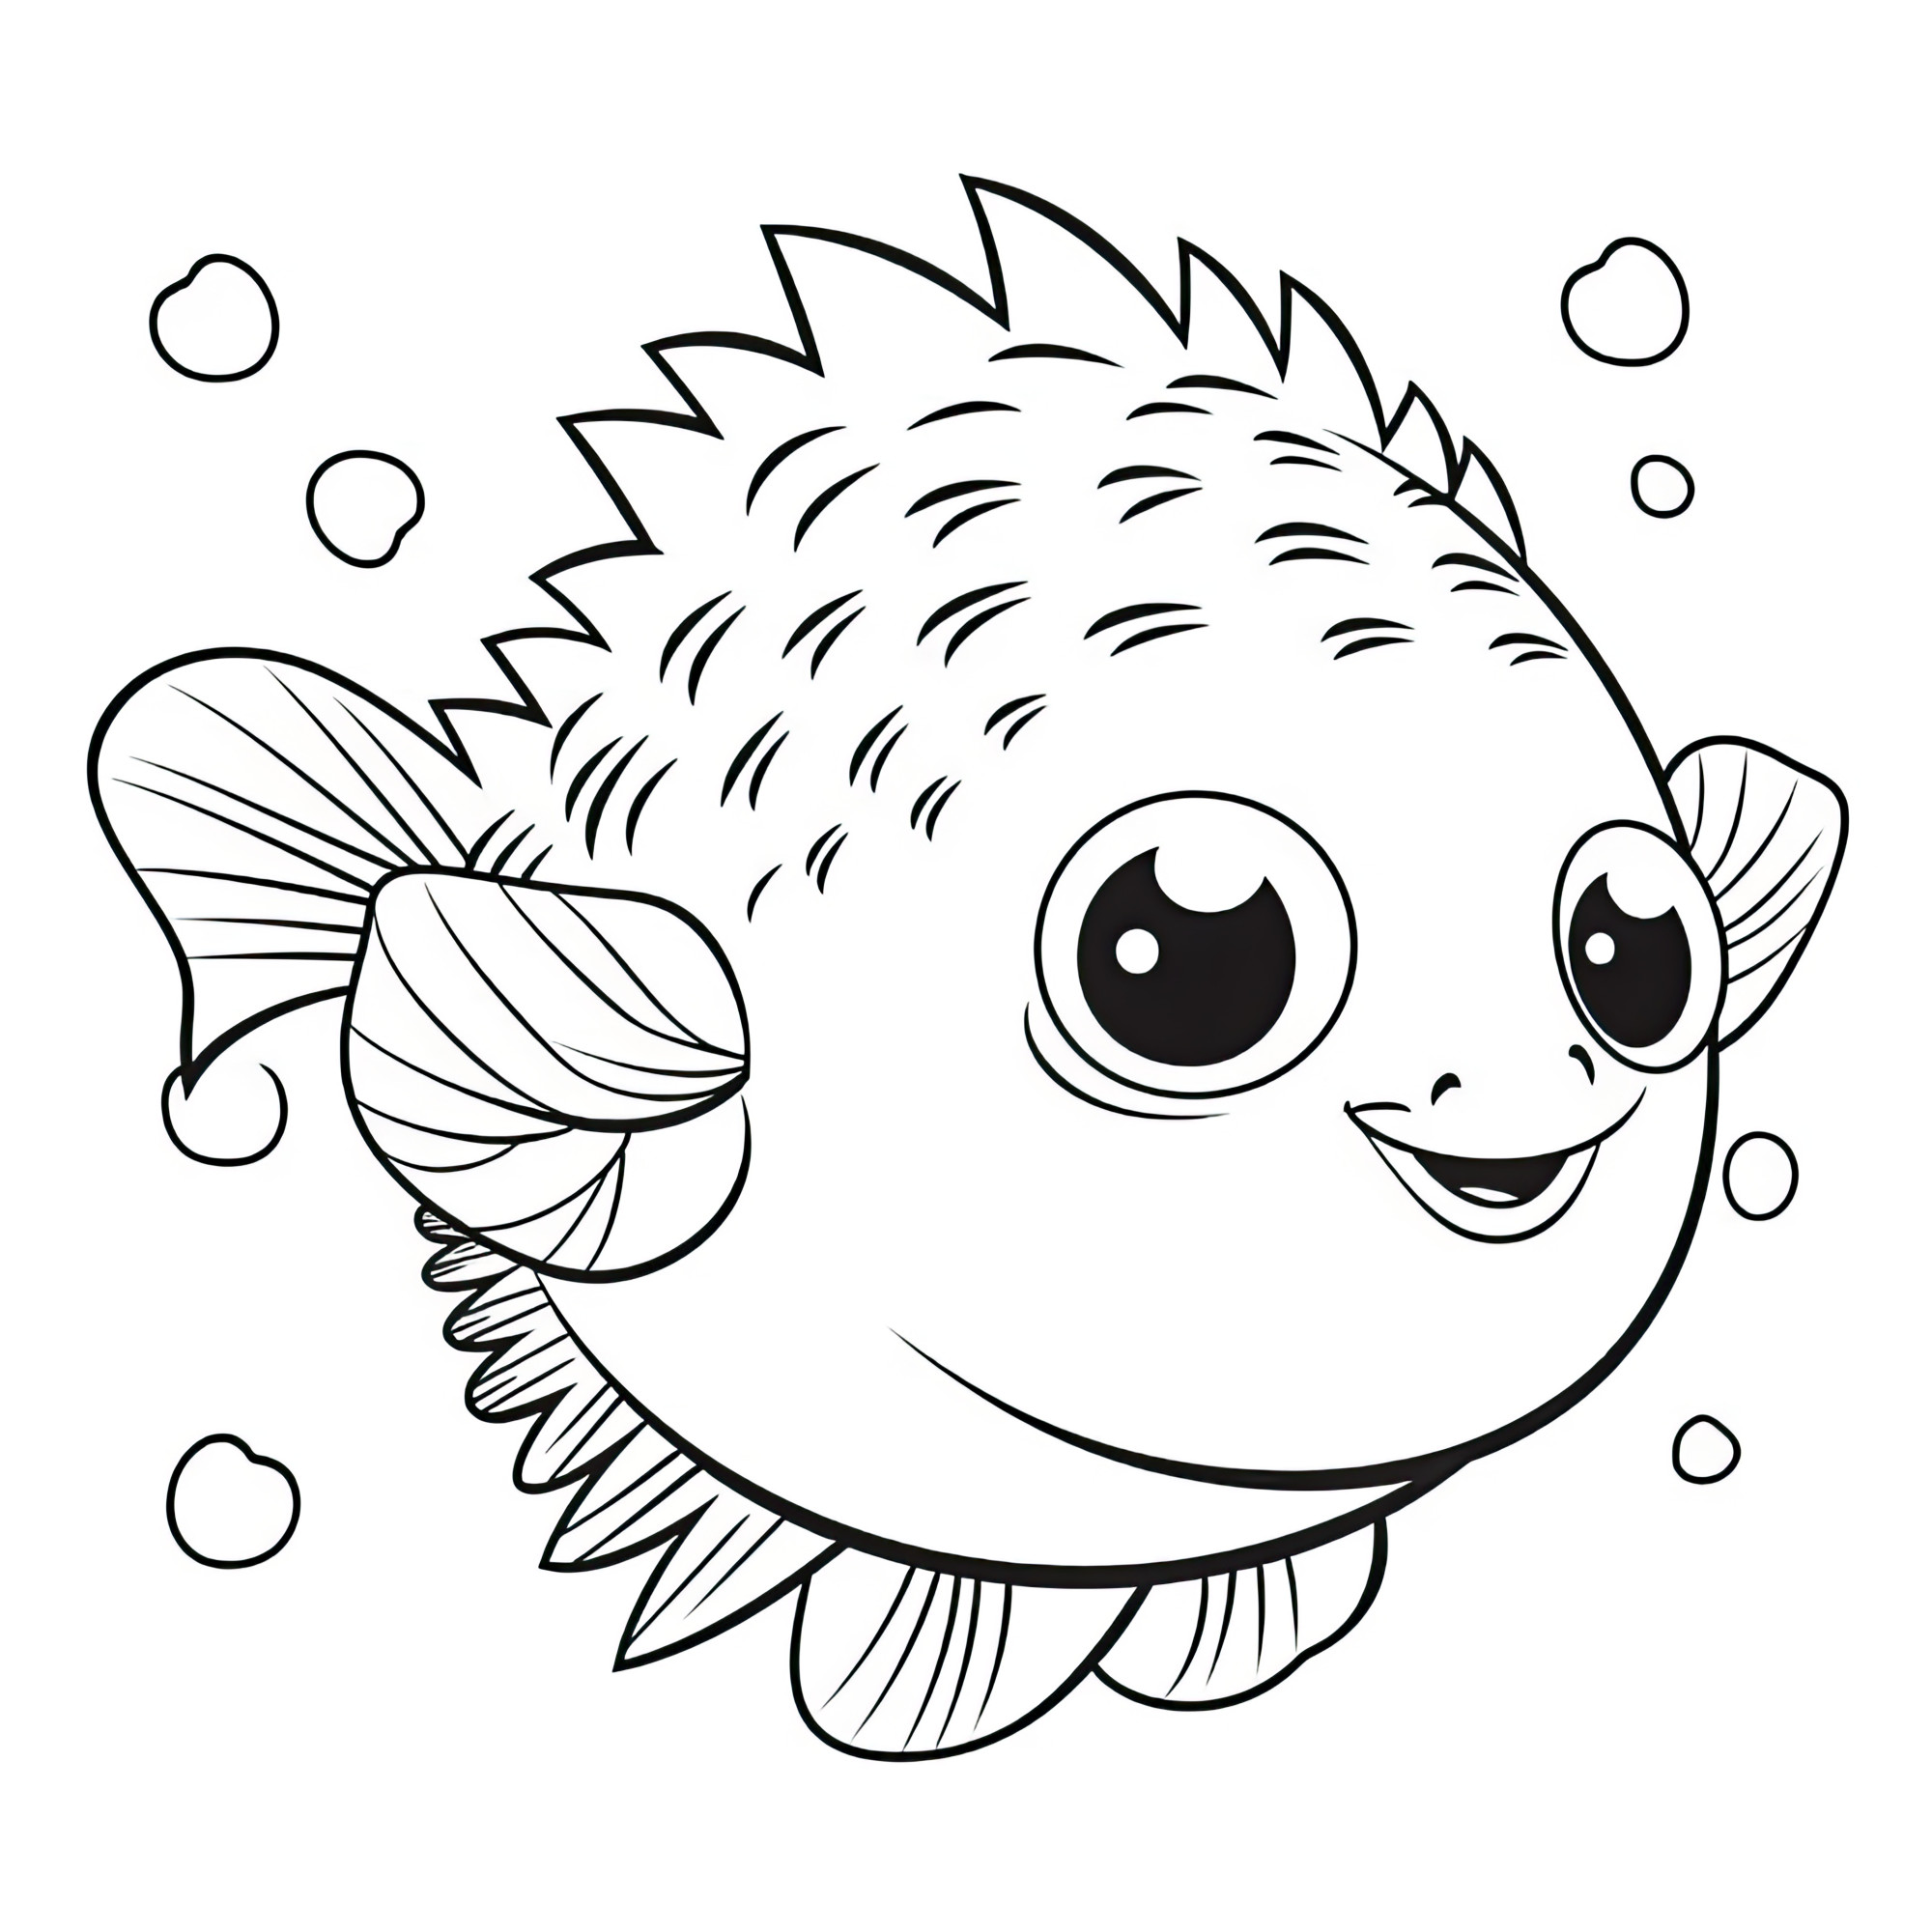 Раскраска для детей: рыбка фугу с большими глазами